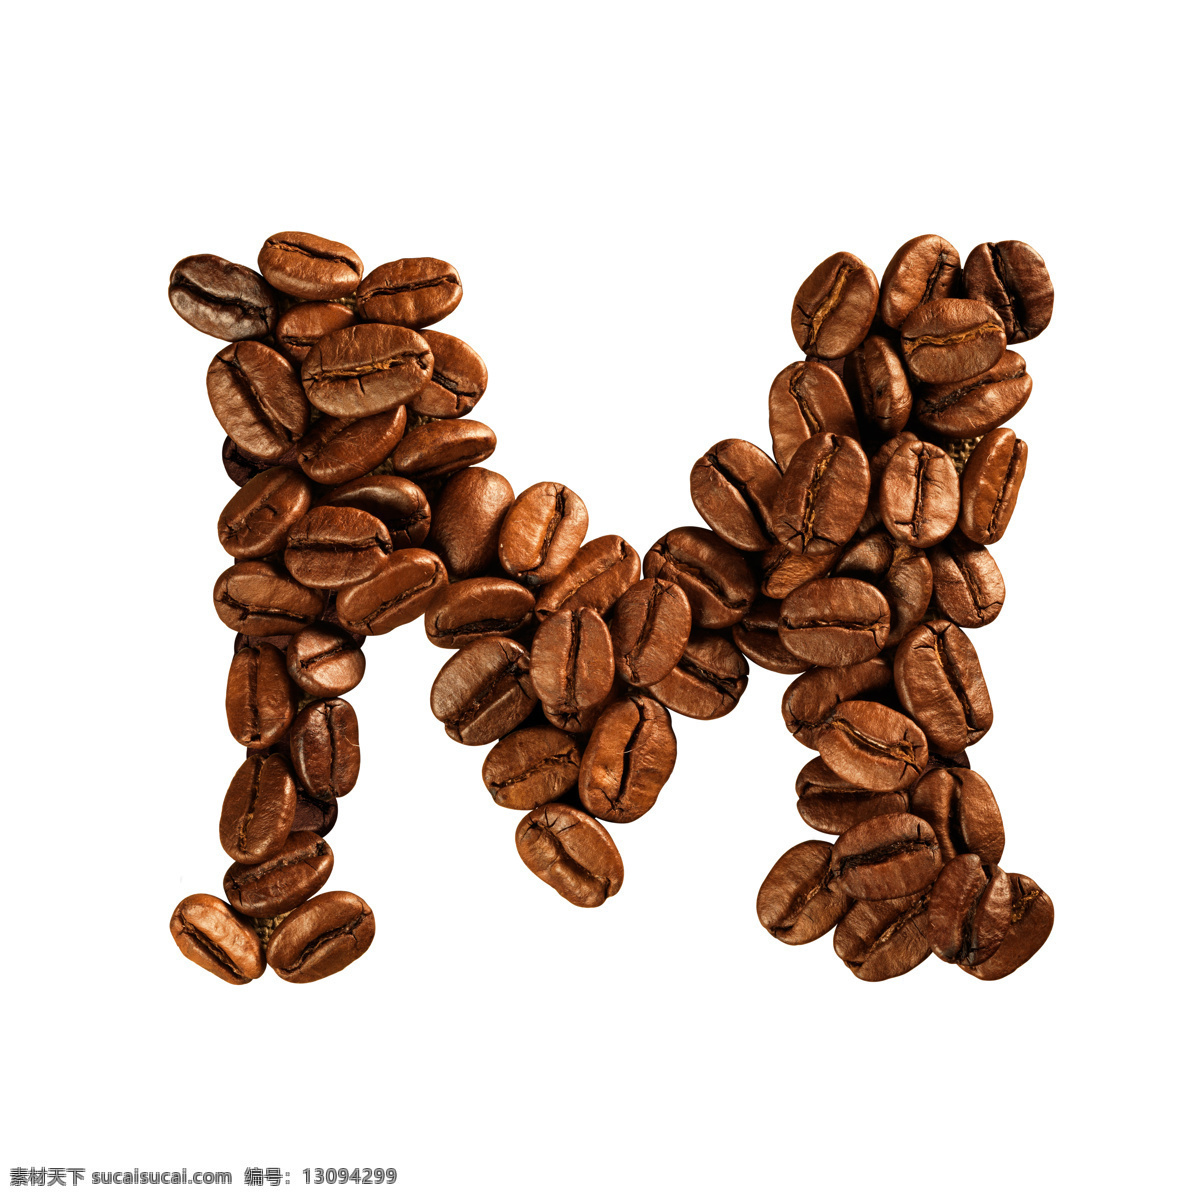 咖啡豆 组成 字母 m 咖啡 文字 艺术字体 食材原料 书画文字 文化艺术 白色